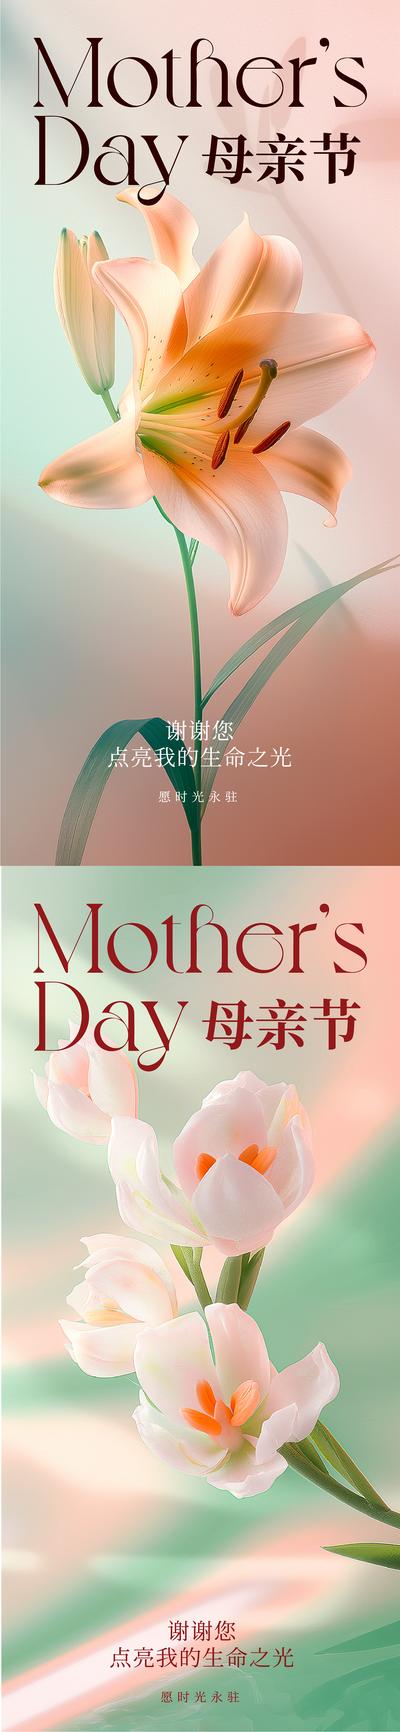 南门网 广告 海报 公历节日 母亲节 花 温馨 光影 系列 唯美